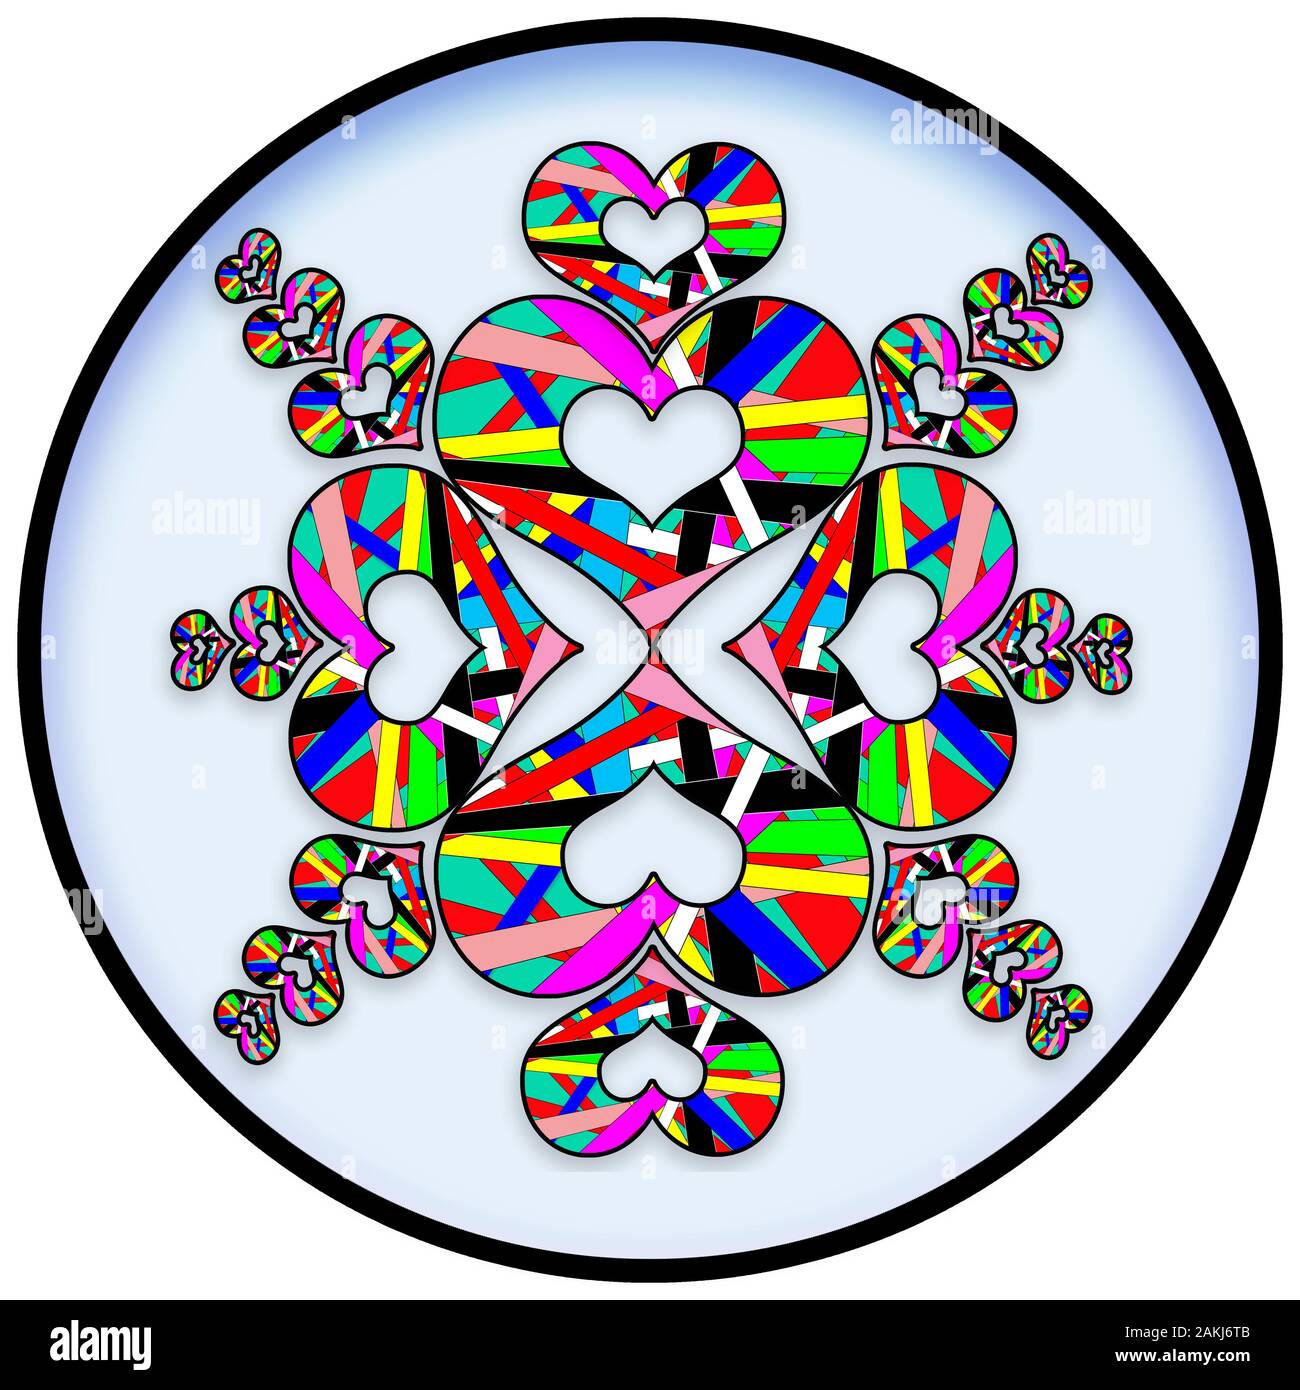 Luminose e colori audaci in questi geometrica astratta Caleidoscopio cuore Pattern designs Foto Stock